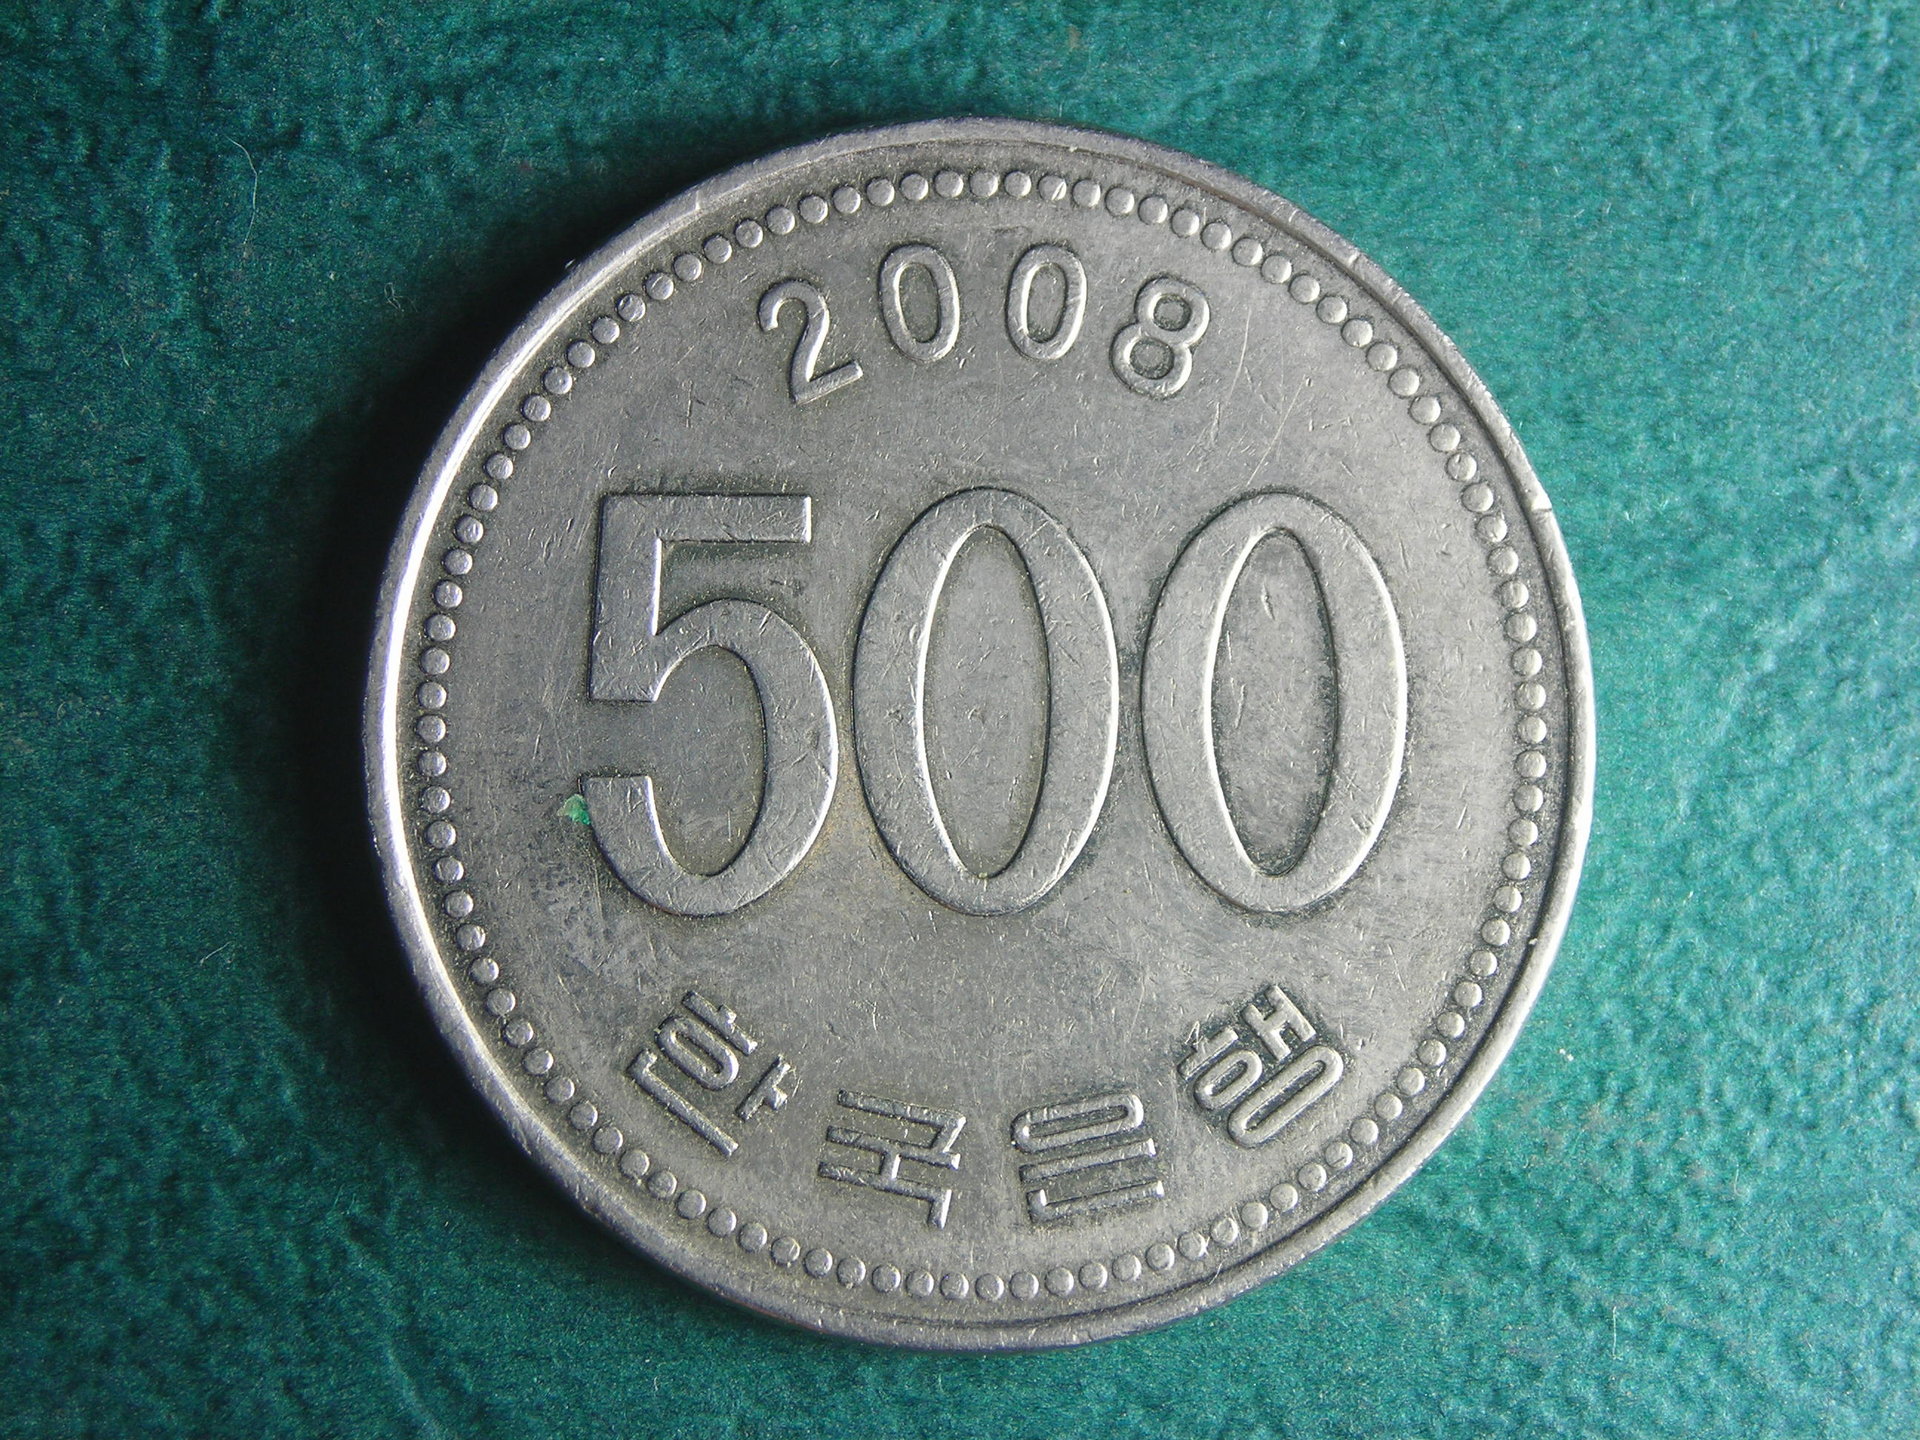 2008 Korea 500 w rev.JPG